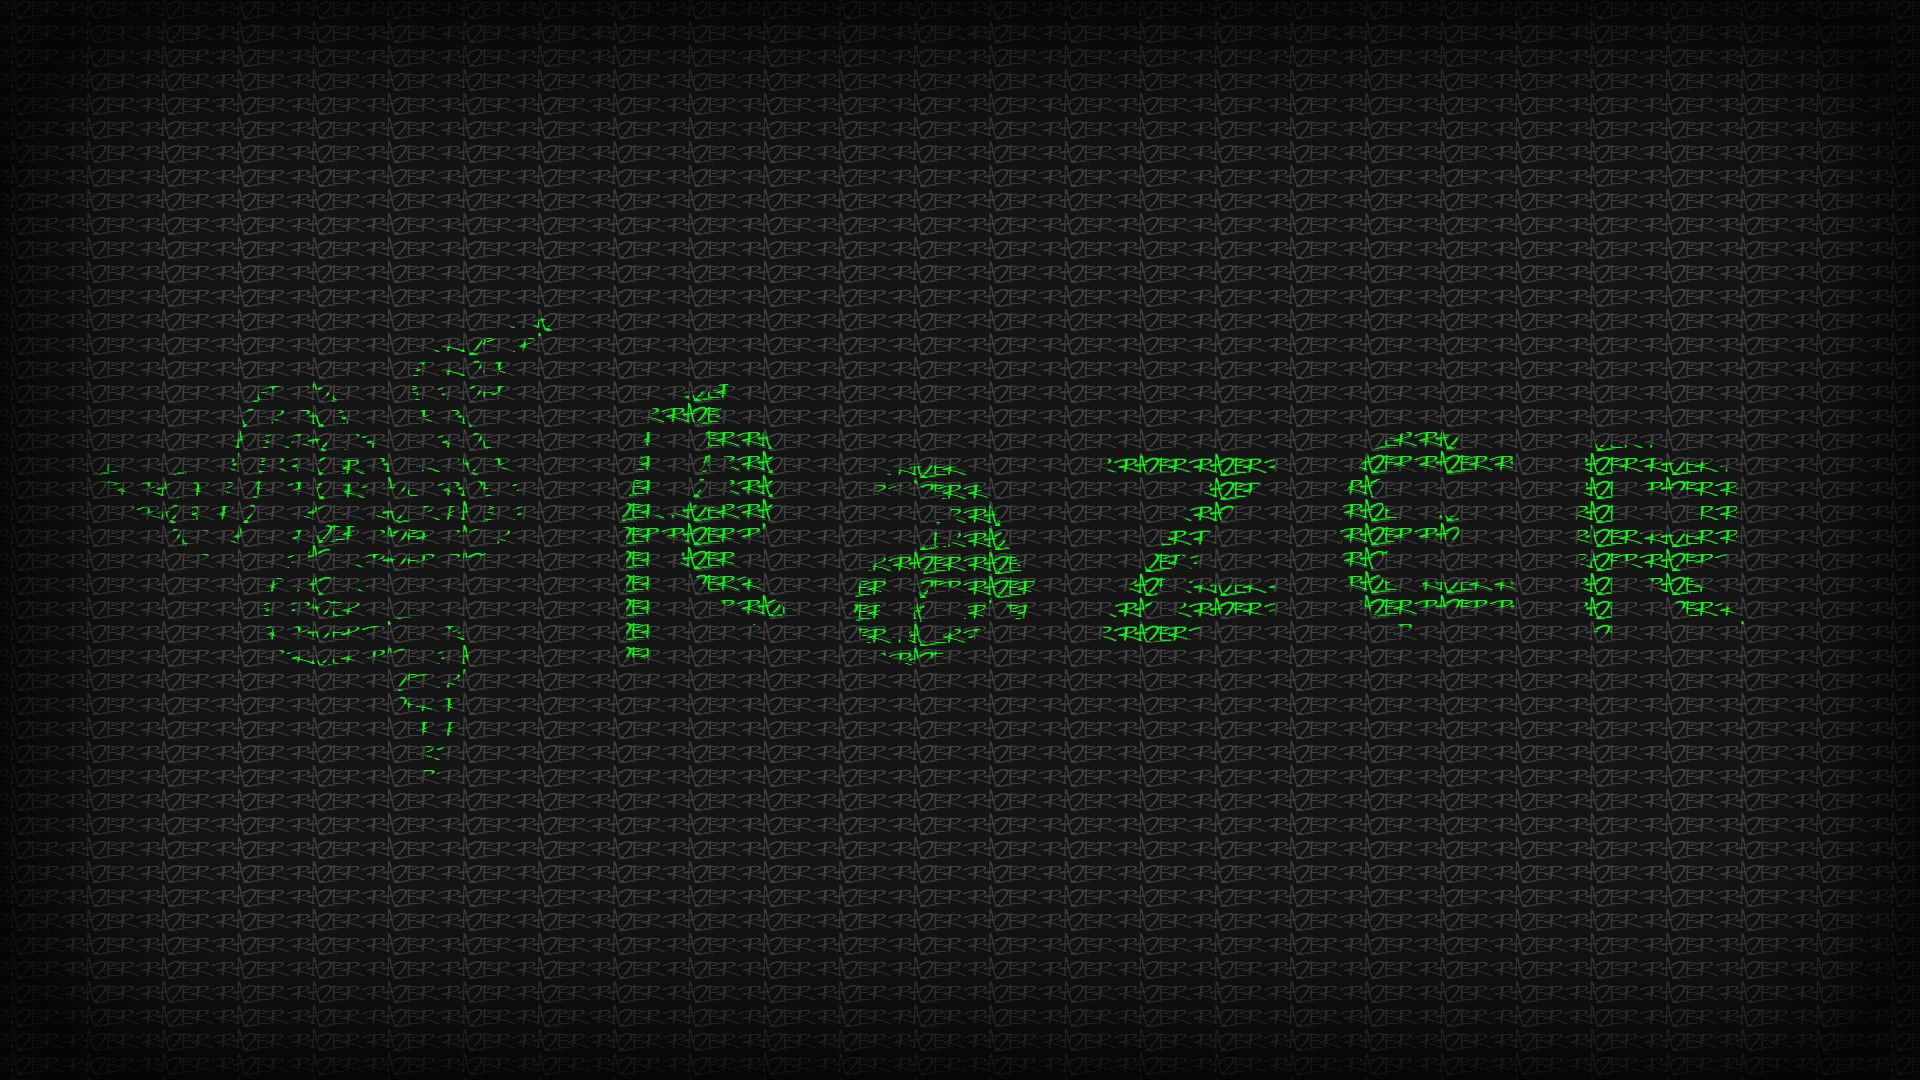 Razer Green Logo HD Wallpaper 1080p Patible For